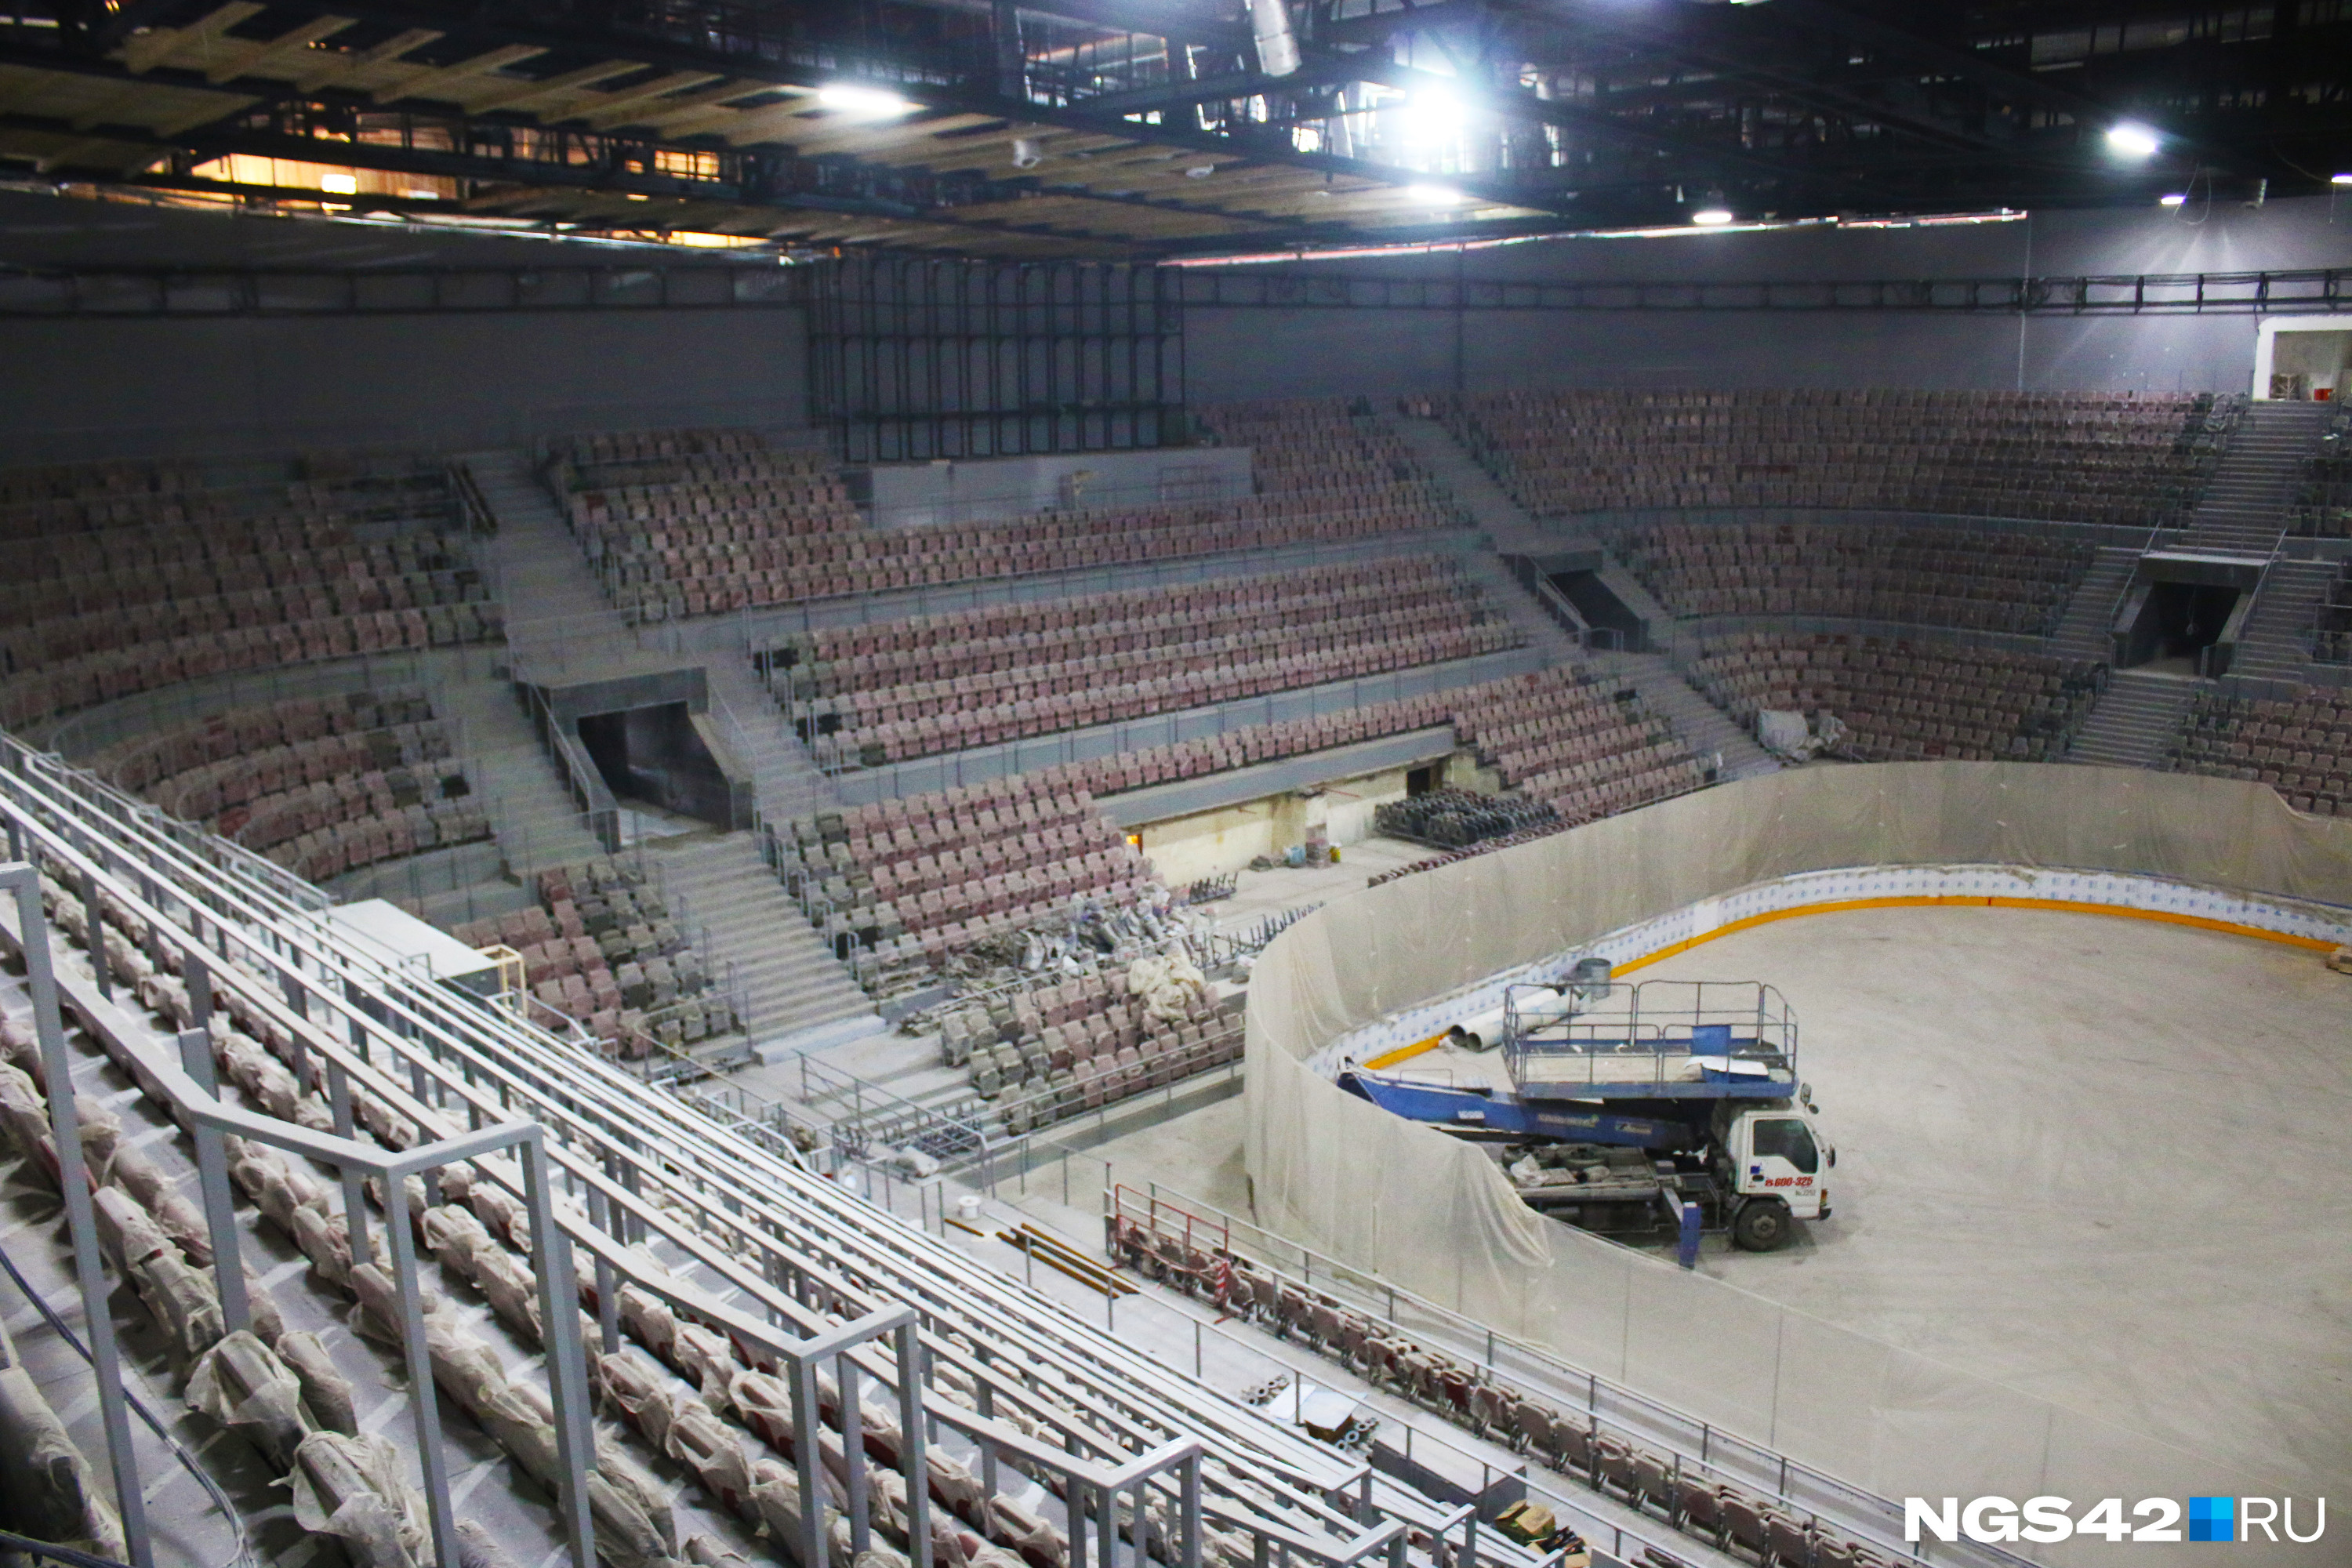 До реконструкции на арене могли одновременно разместиться 7533 зрителя. Ожидается, что после ремонта вместимость стадиона практически не изменится